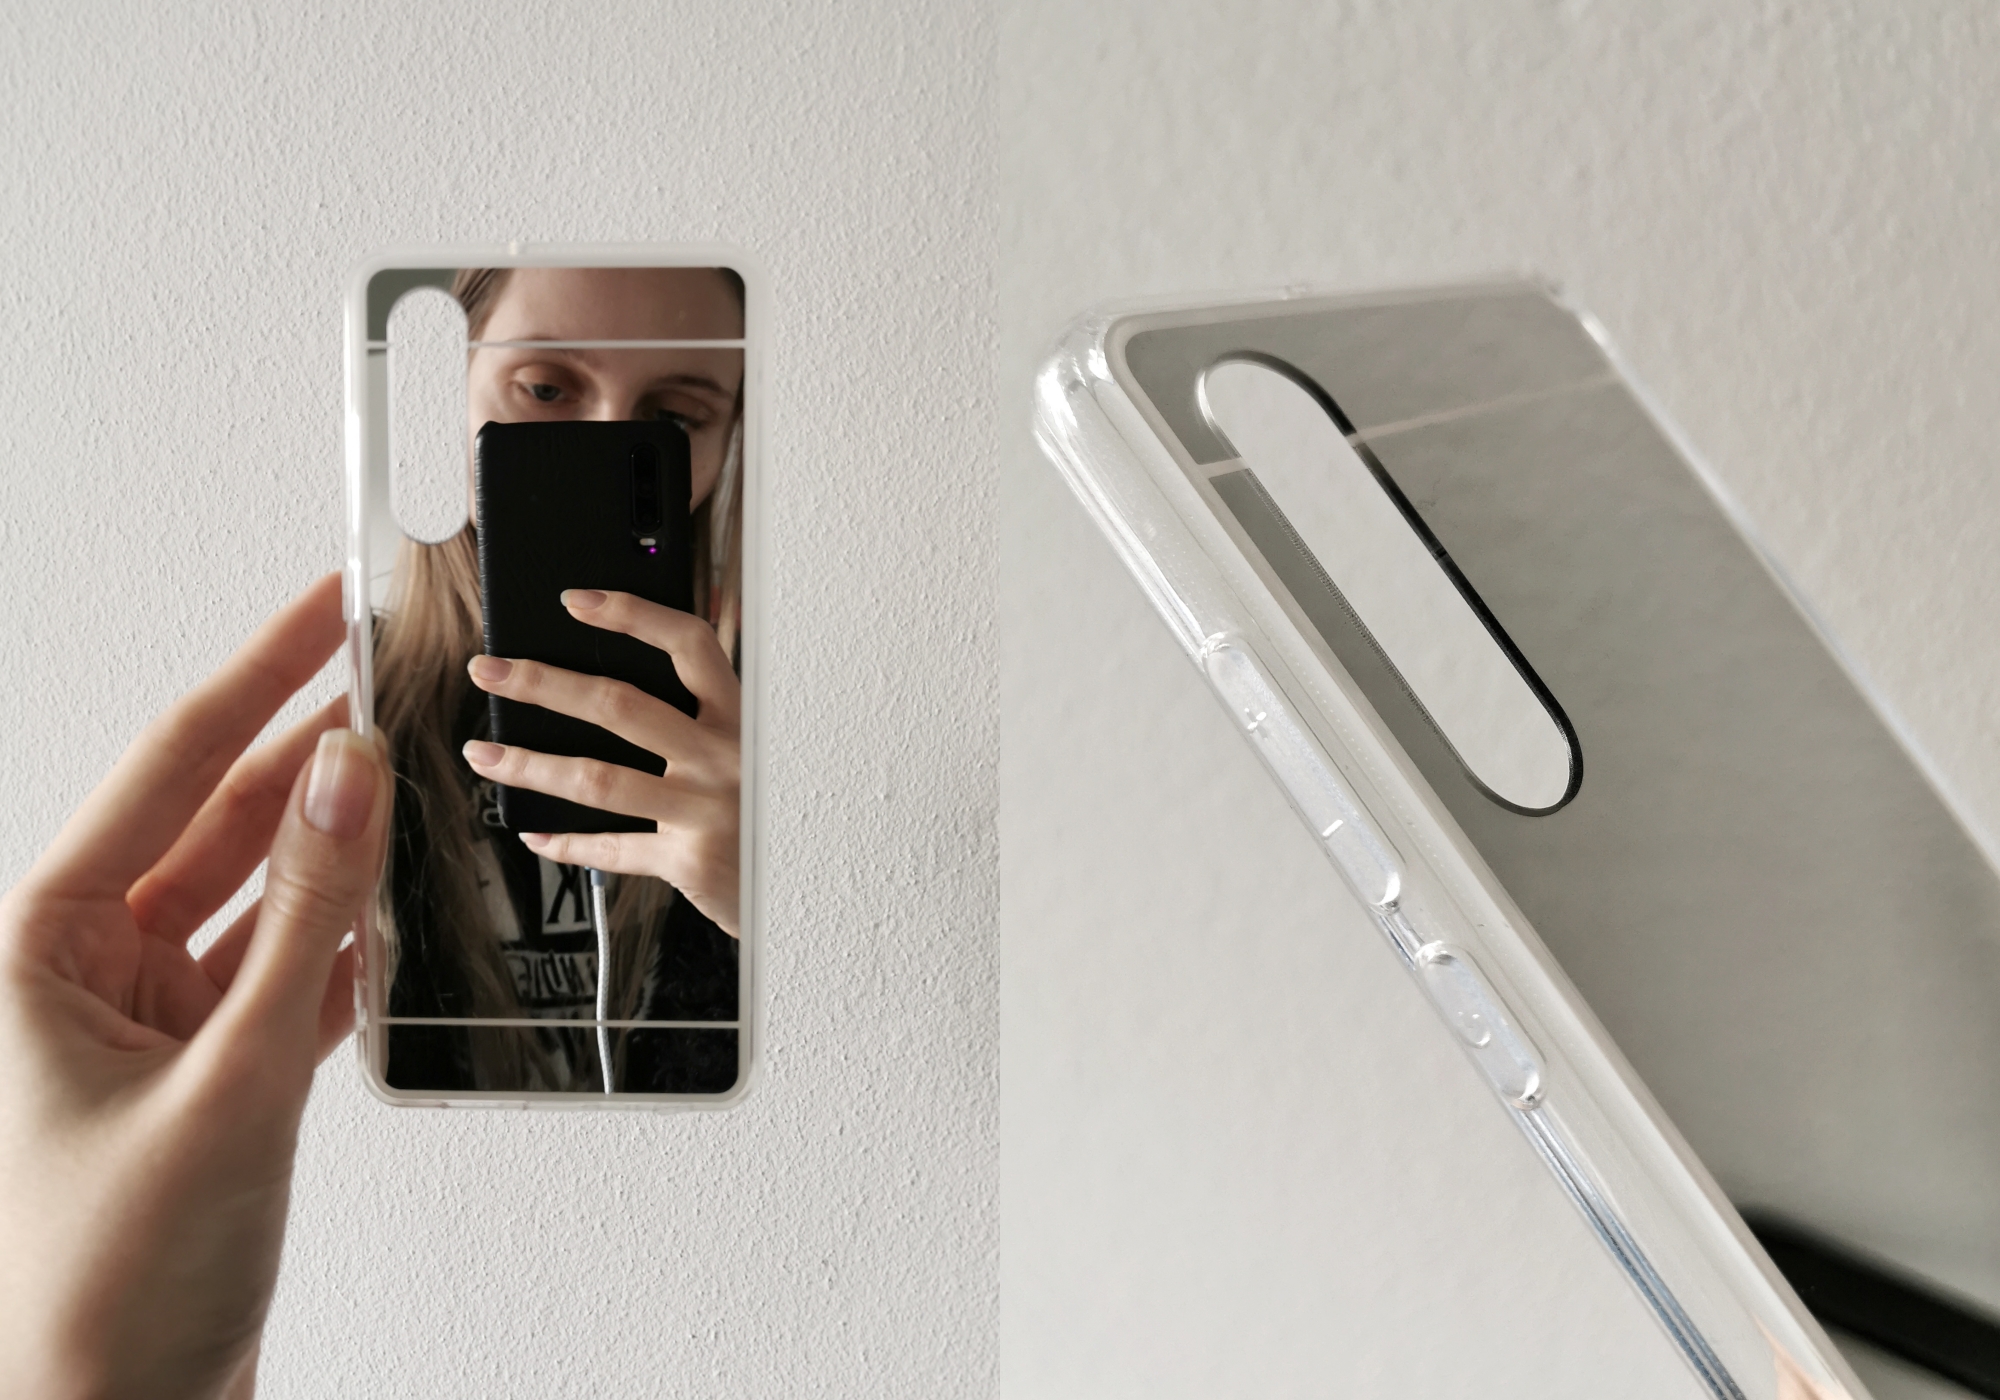 Hoesjes Outfit telefoonhoesje Huawei P30 softcase zwart marmer hoesje zilver spiegel effect doorzichtig met zilveren rand review trendy hoesjes